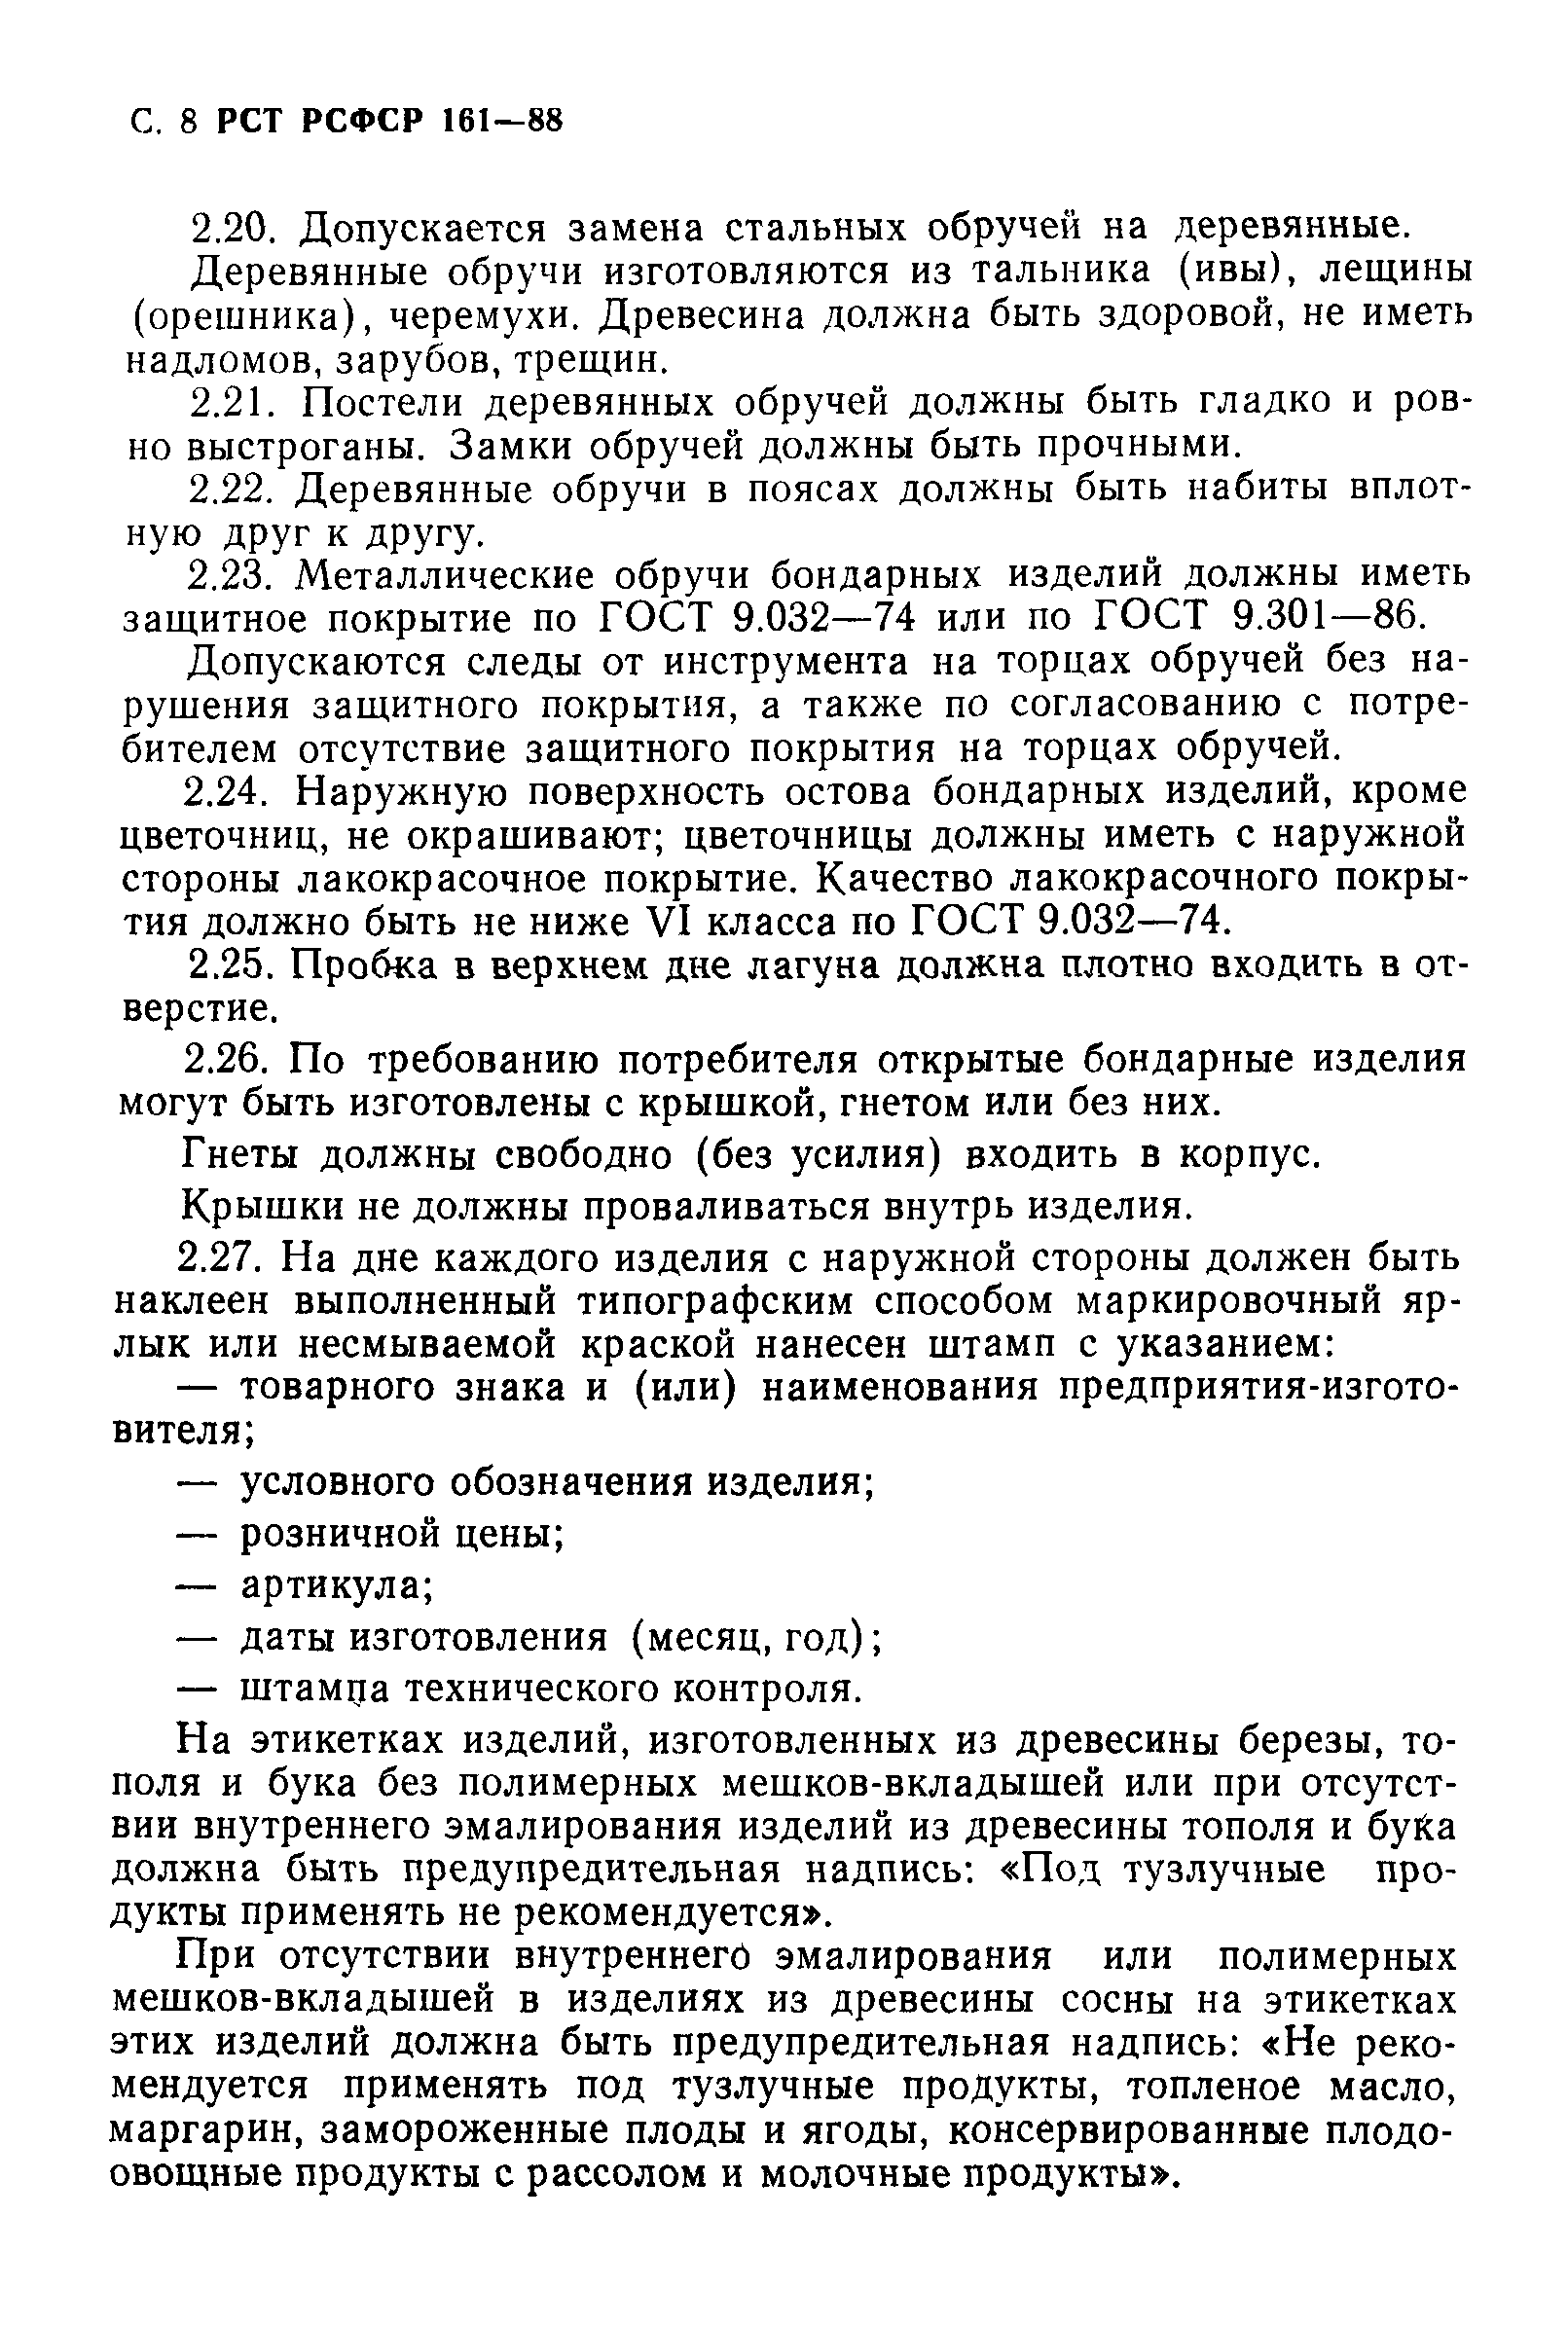 РСТ РСФСР 161-88